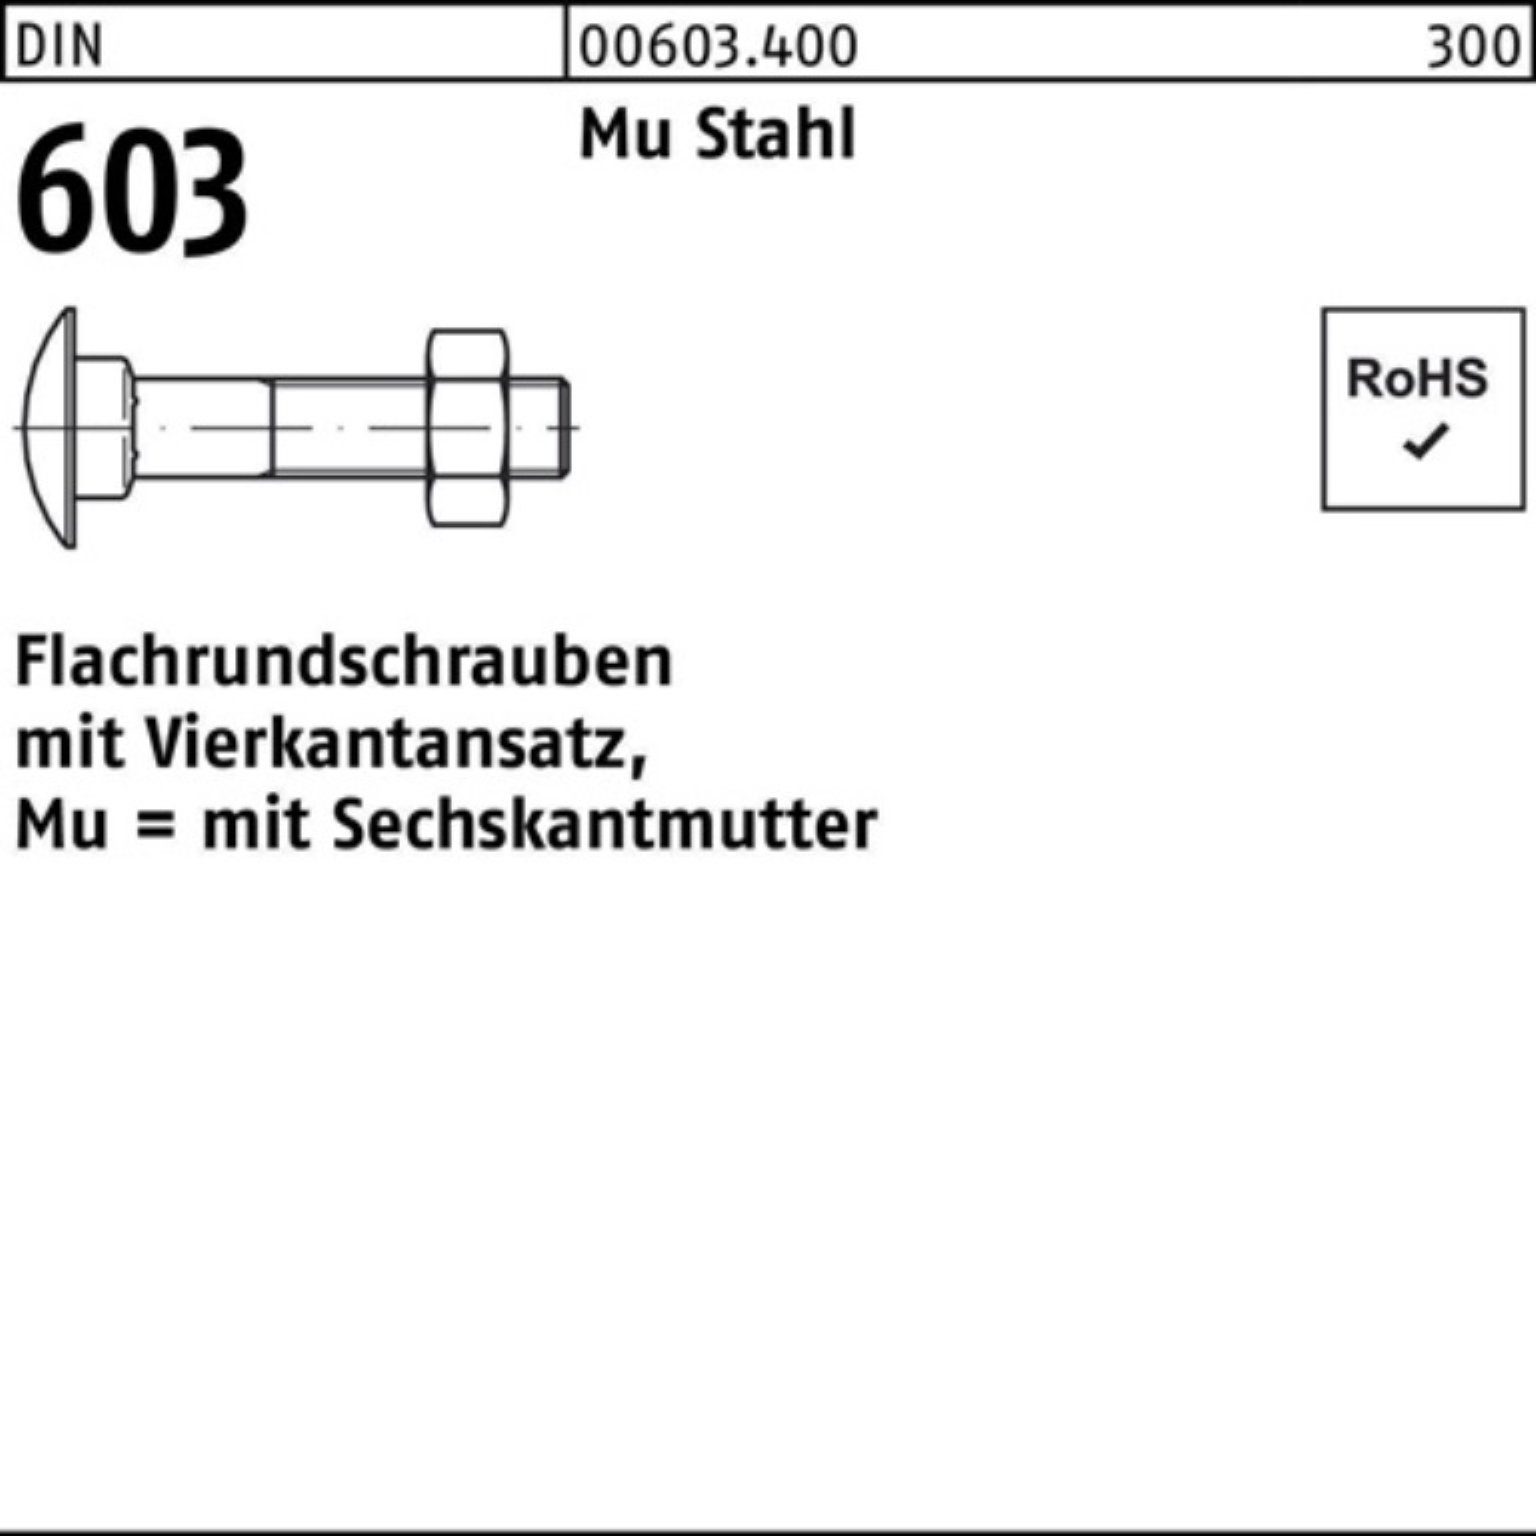 Ausgezeichnete Qualität Reyher Schraube 100er Pack 603 Vierkantansatz/6-ktmutter Flachrundschraube DIN M12x150